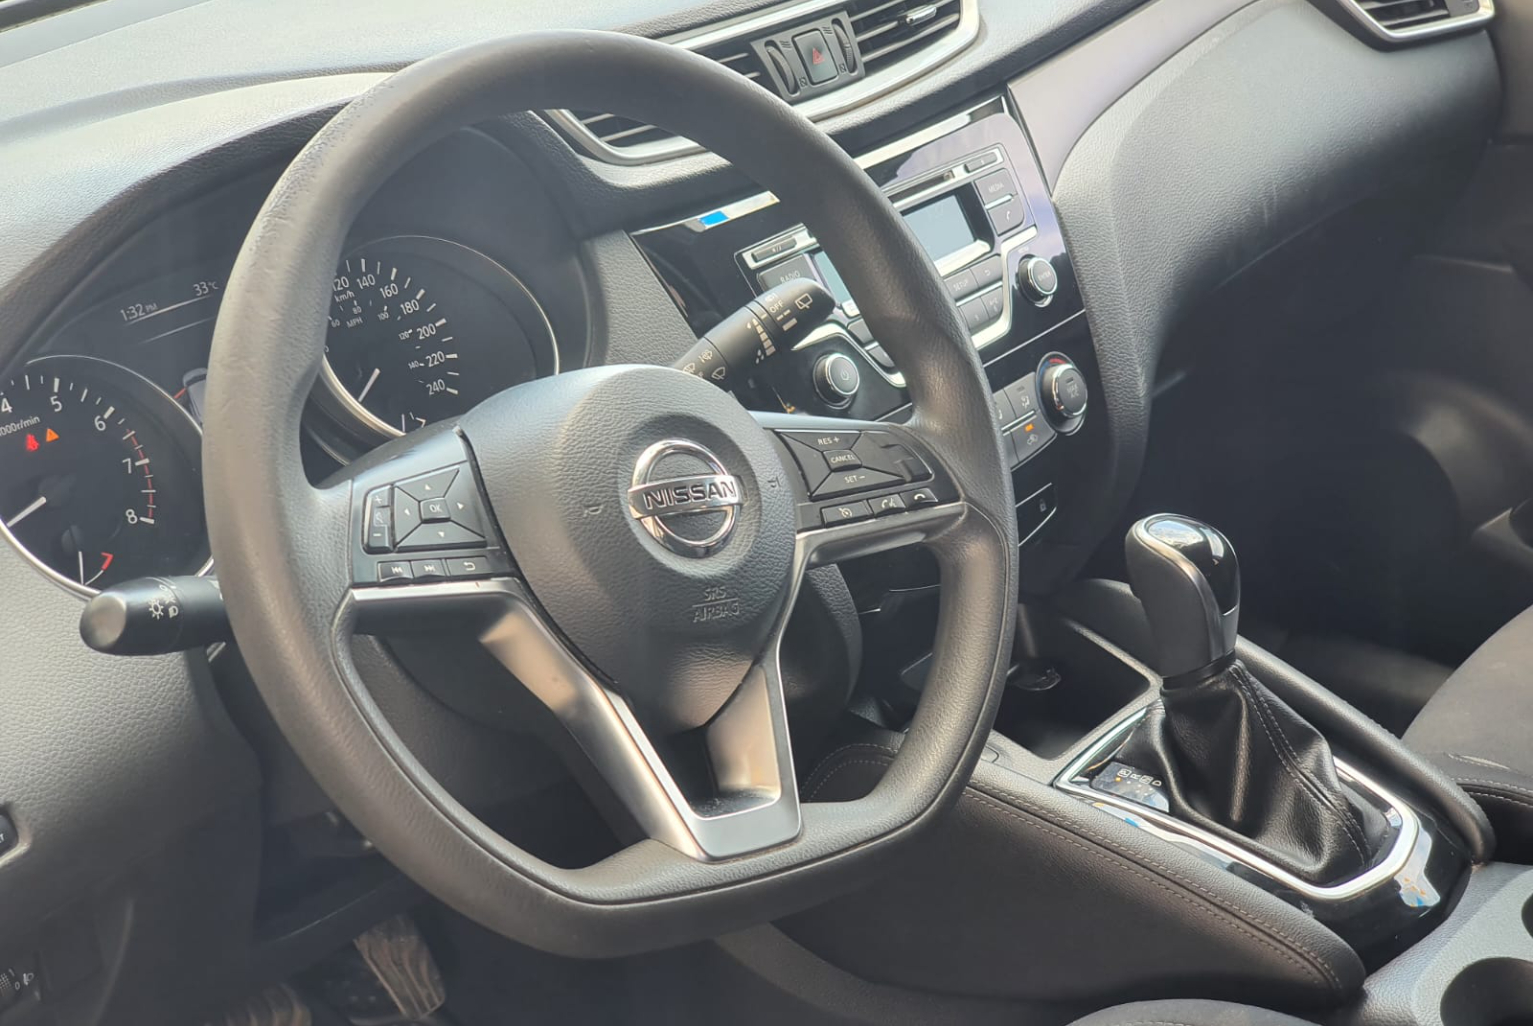 Nissan Qashqai 2019 Automático color Negro, Imagen #7